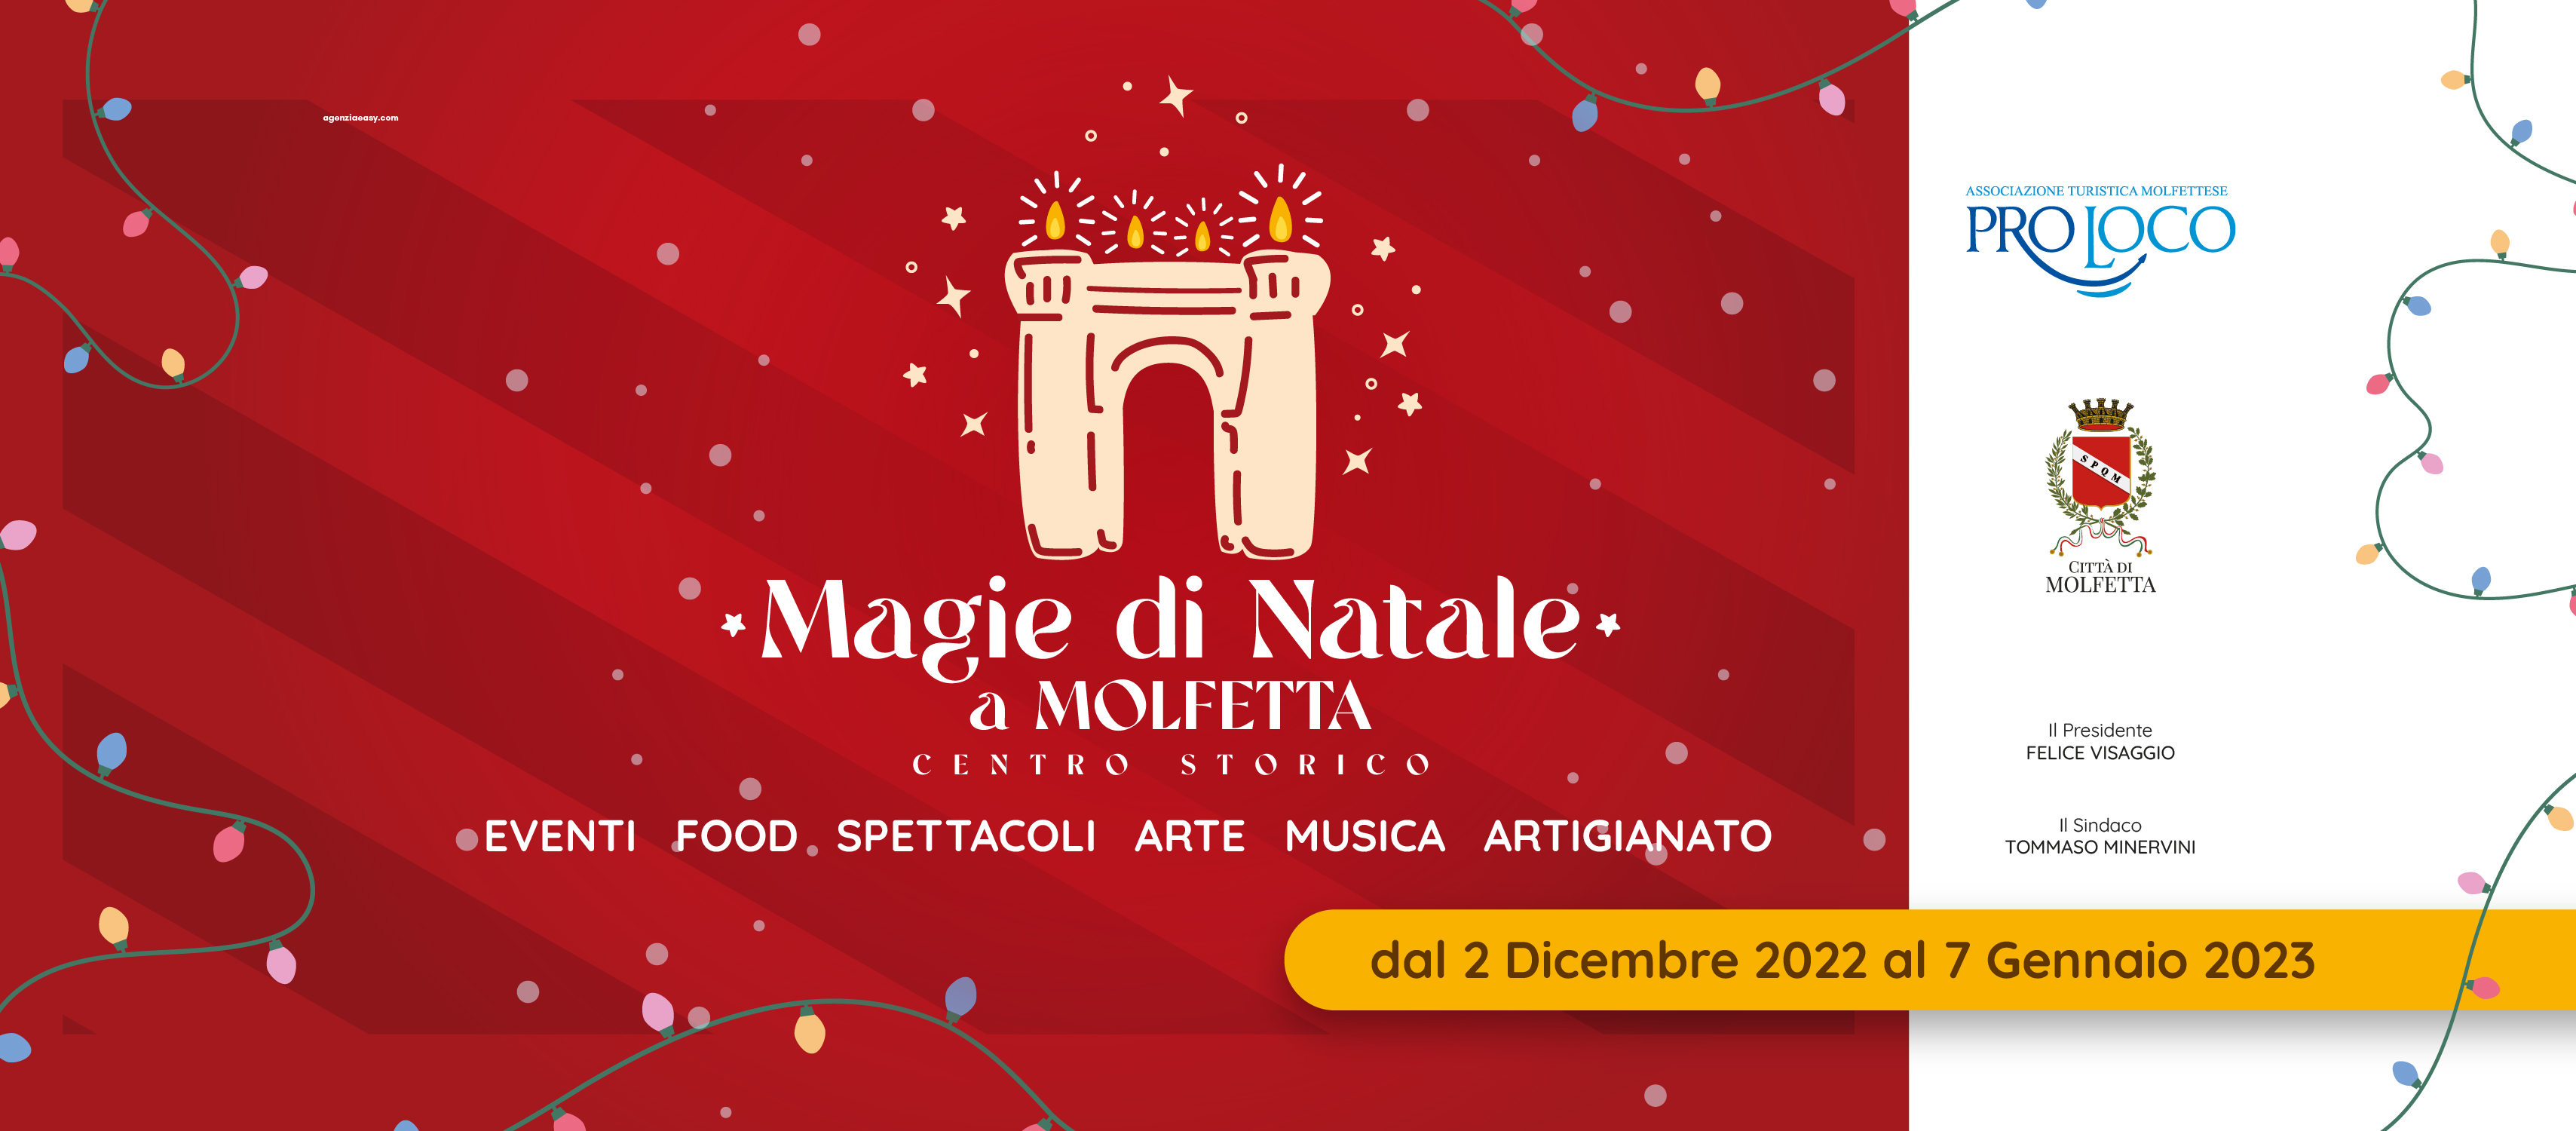 Molfetta, Magie di Natale a Molfetta: la magia delle tradizioni natalizie nel centro storico.